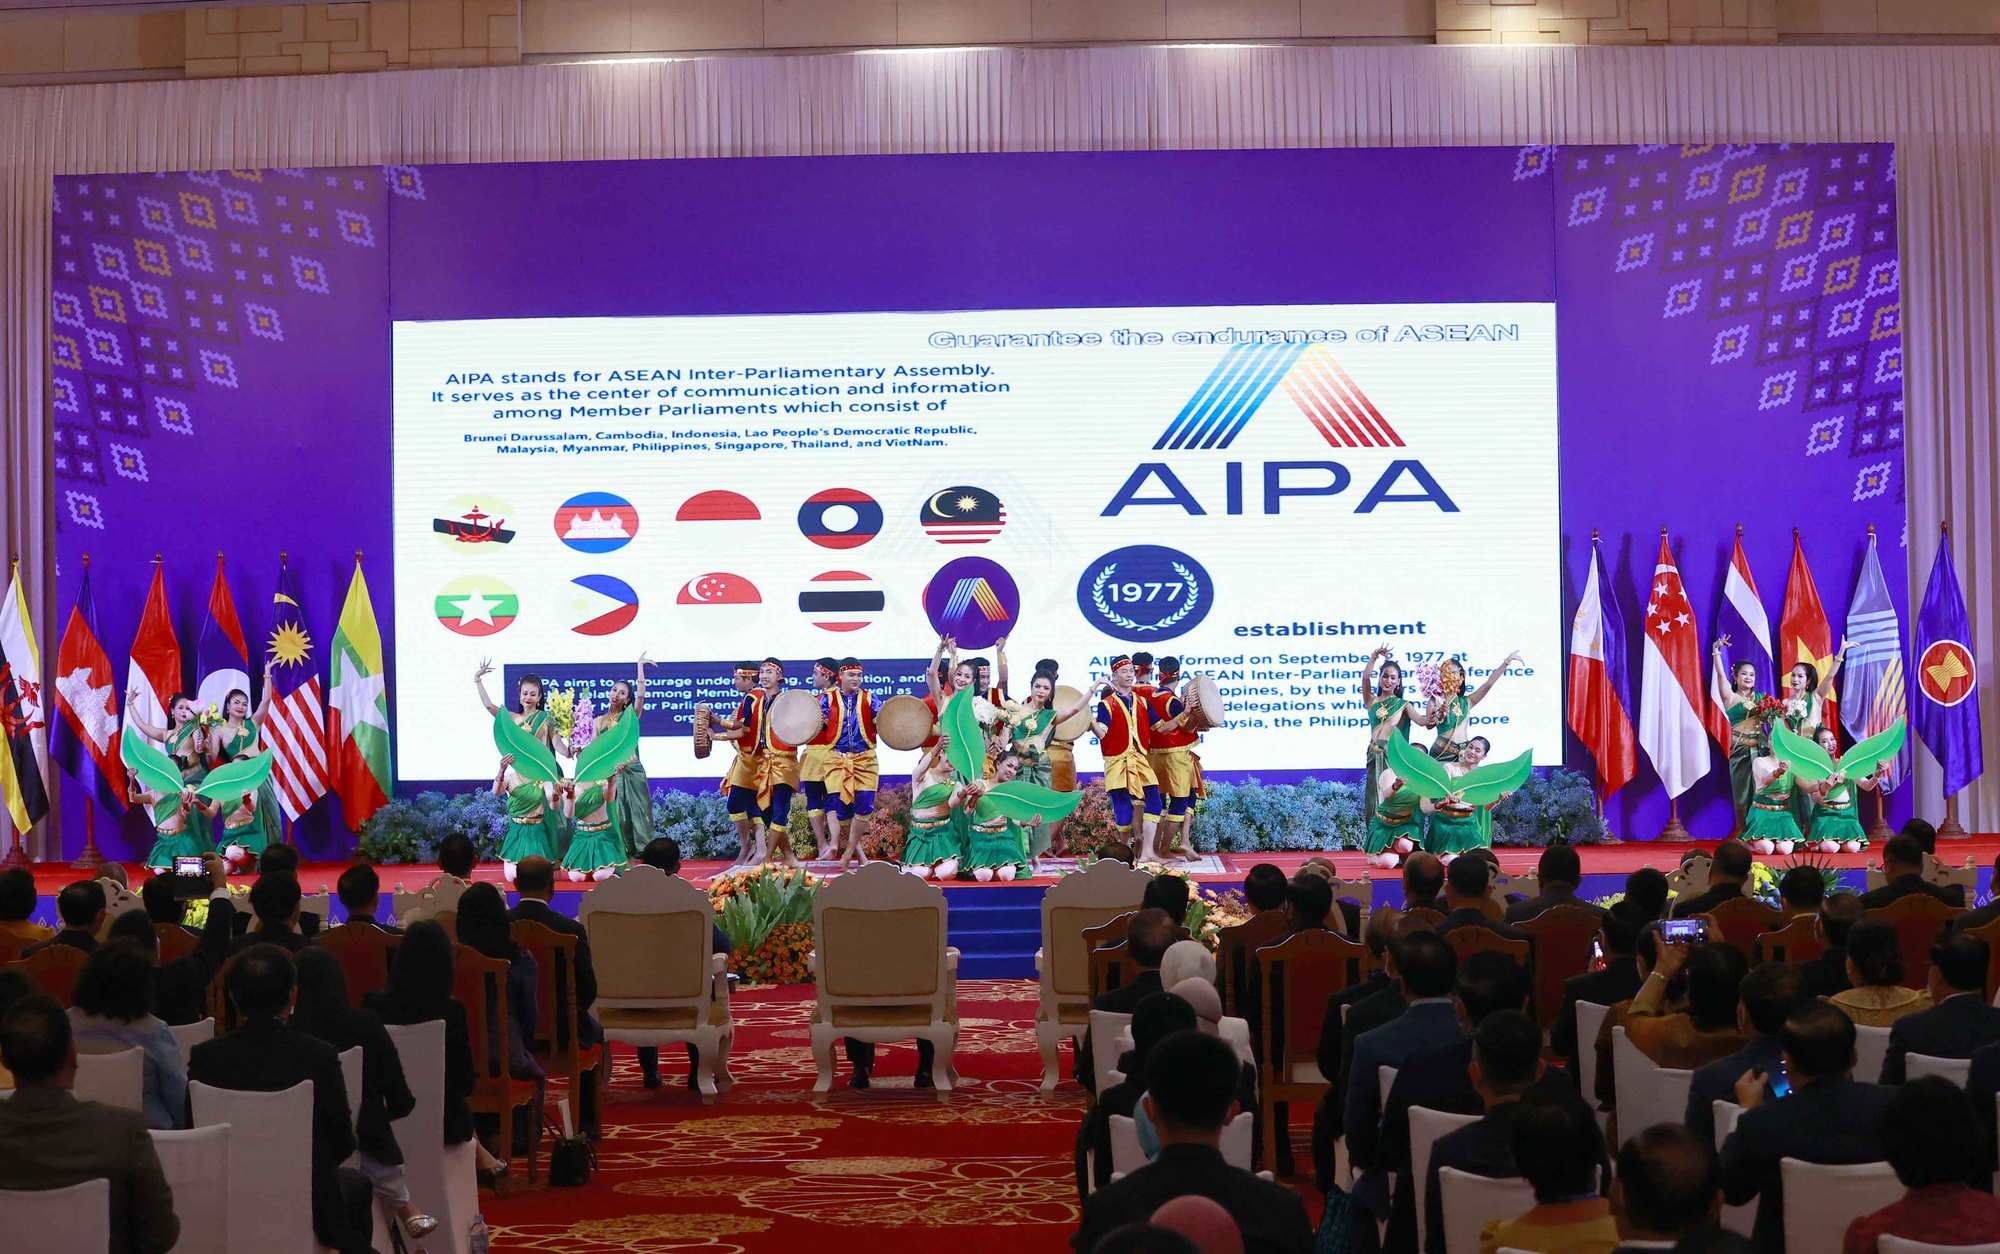 Khai mạc Đại hội đồng liên nghị viện các quốc gia Đông Nam Á lần thứ 43 - Ảnh 14.